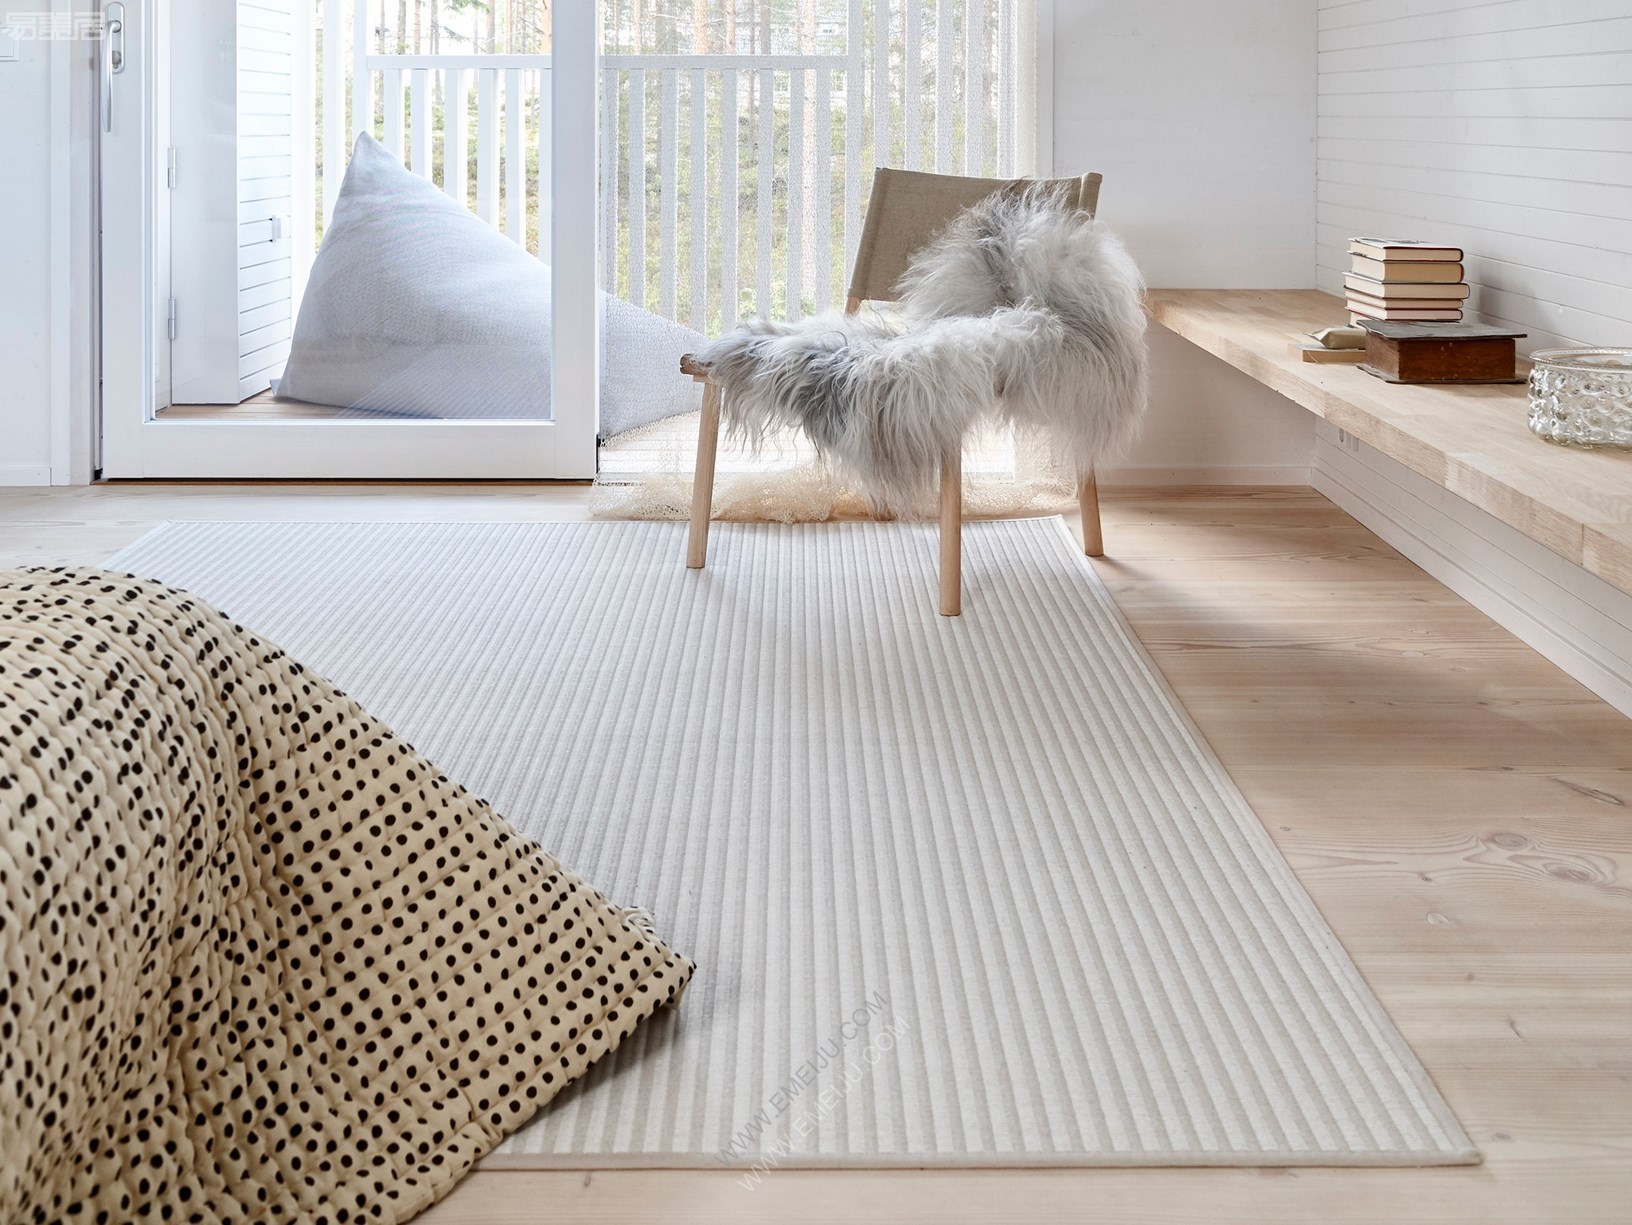 北欧简约风格地毯客厅现代几何沙发茶几垫卧室床边家用样板间地毯-阿里巴巴